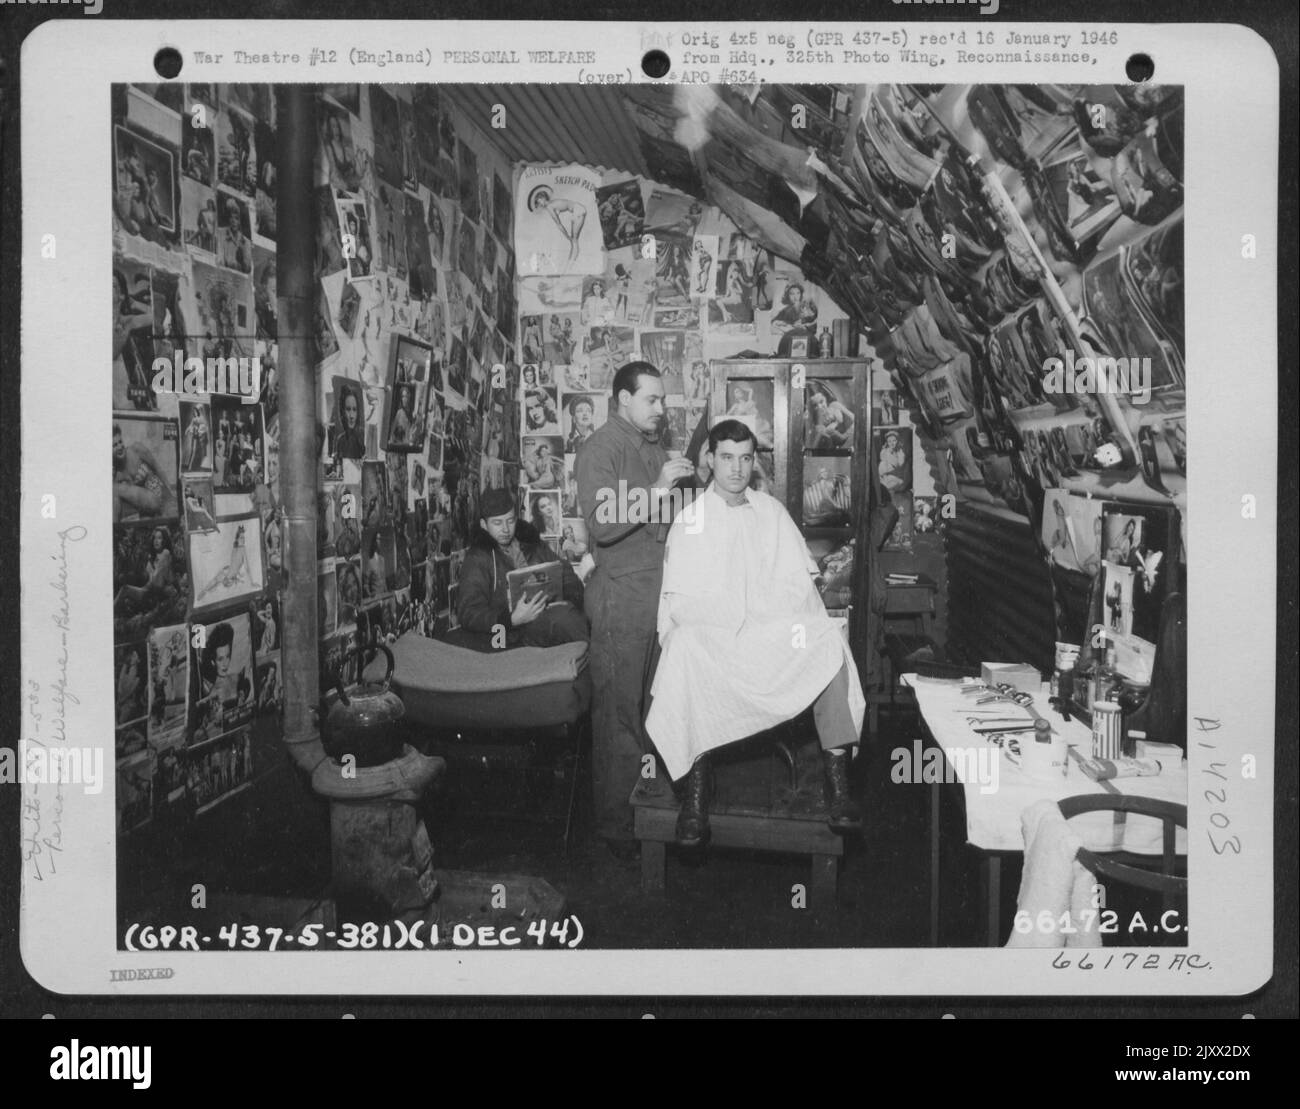 Una moltitudine di immagini puntellate che adornano la parete del Barbiere dello Squadrone della bomba del 533Rd cattura l'occhio del cliente mentre il Barbiere gli dà Un rivestimento. 381st Bomb Group, Inghilterra, 1 dicembre 1944. Foto Stock